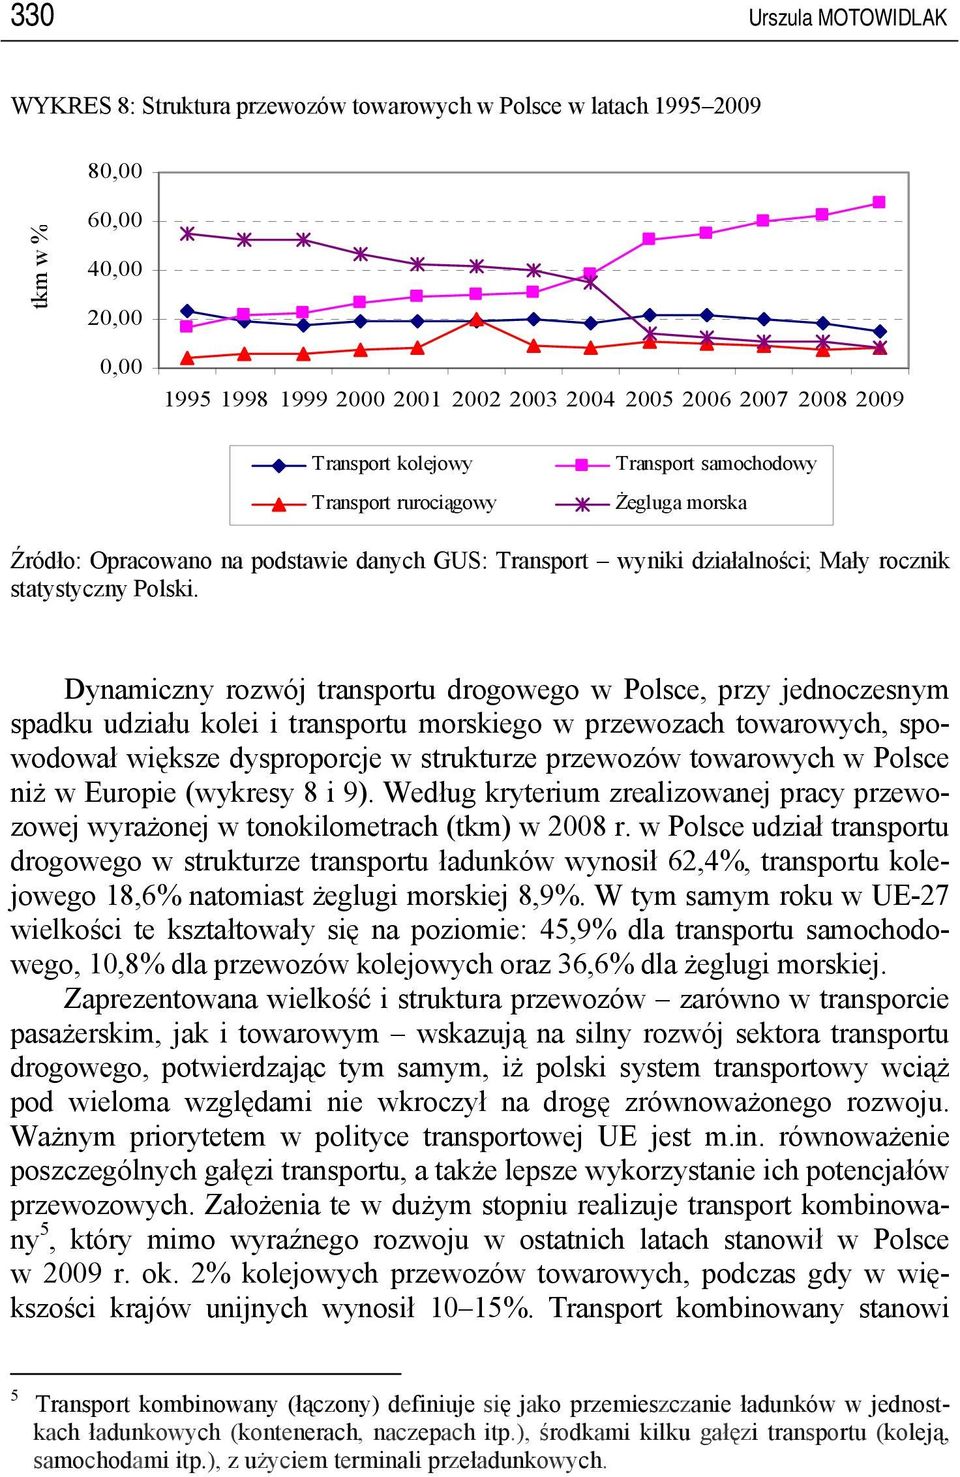 Dynamiczny rozwój transportu drogowego w Polsce, przy jednoczesnym spadku udziału kolei i transportu morskiego w przewozach towarowych, spowodował większe dysproporcje w strukturze przewozów